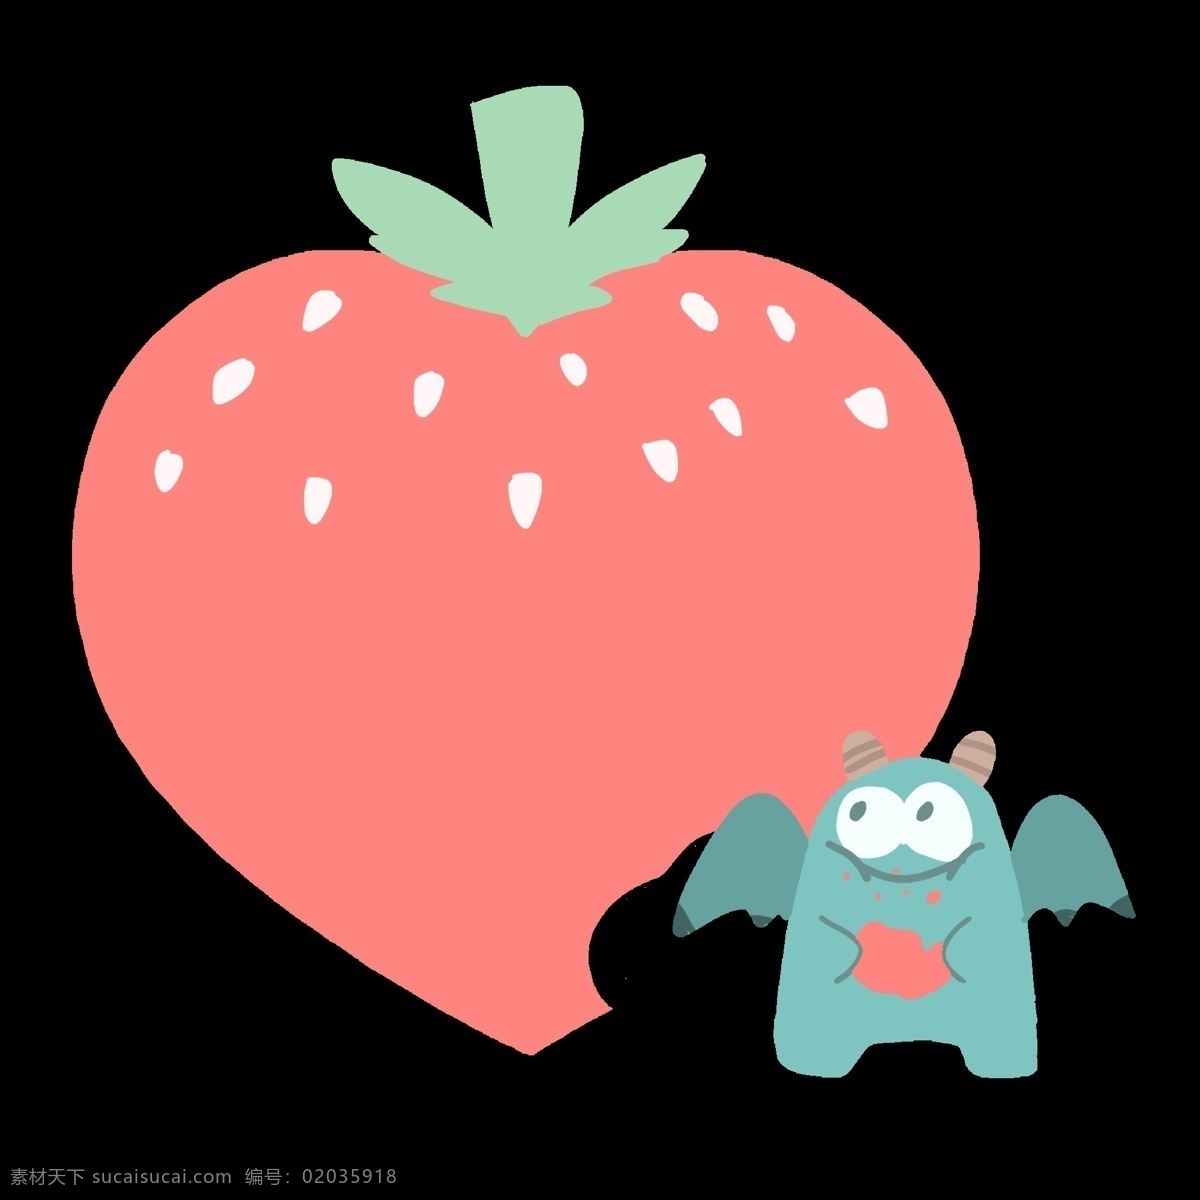 红色 立体 心形 草莓 插图 立体心形 红色心形 草莓心形 绿色动物 绿色篇幅 绿色植物 新鲜的草莓 精美的图案